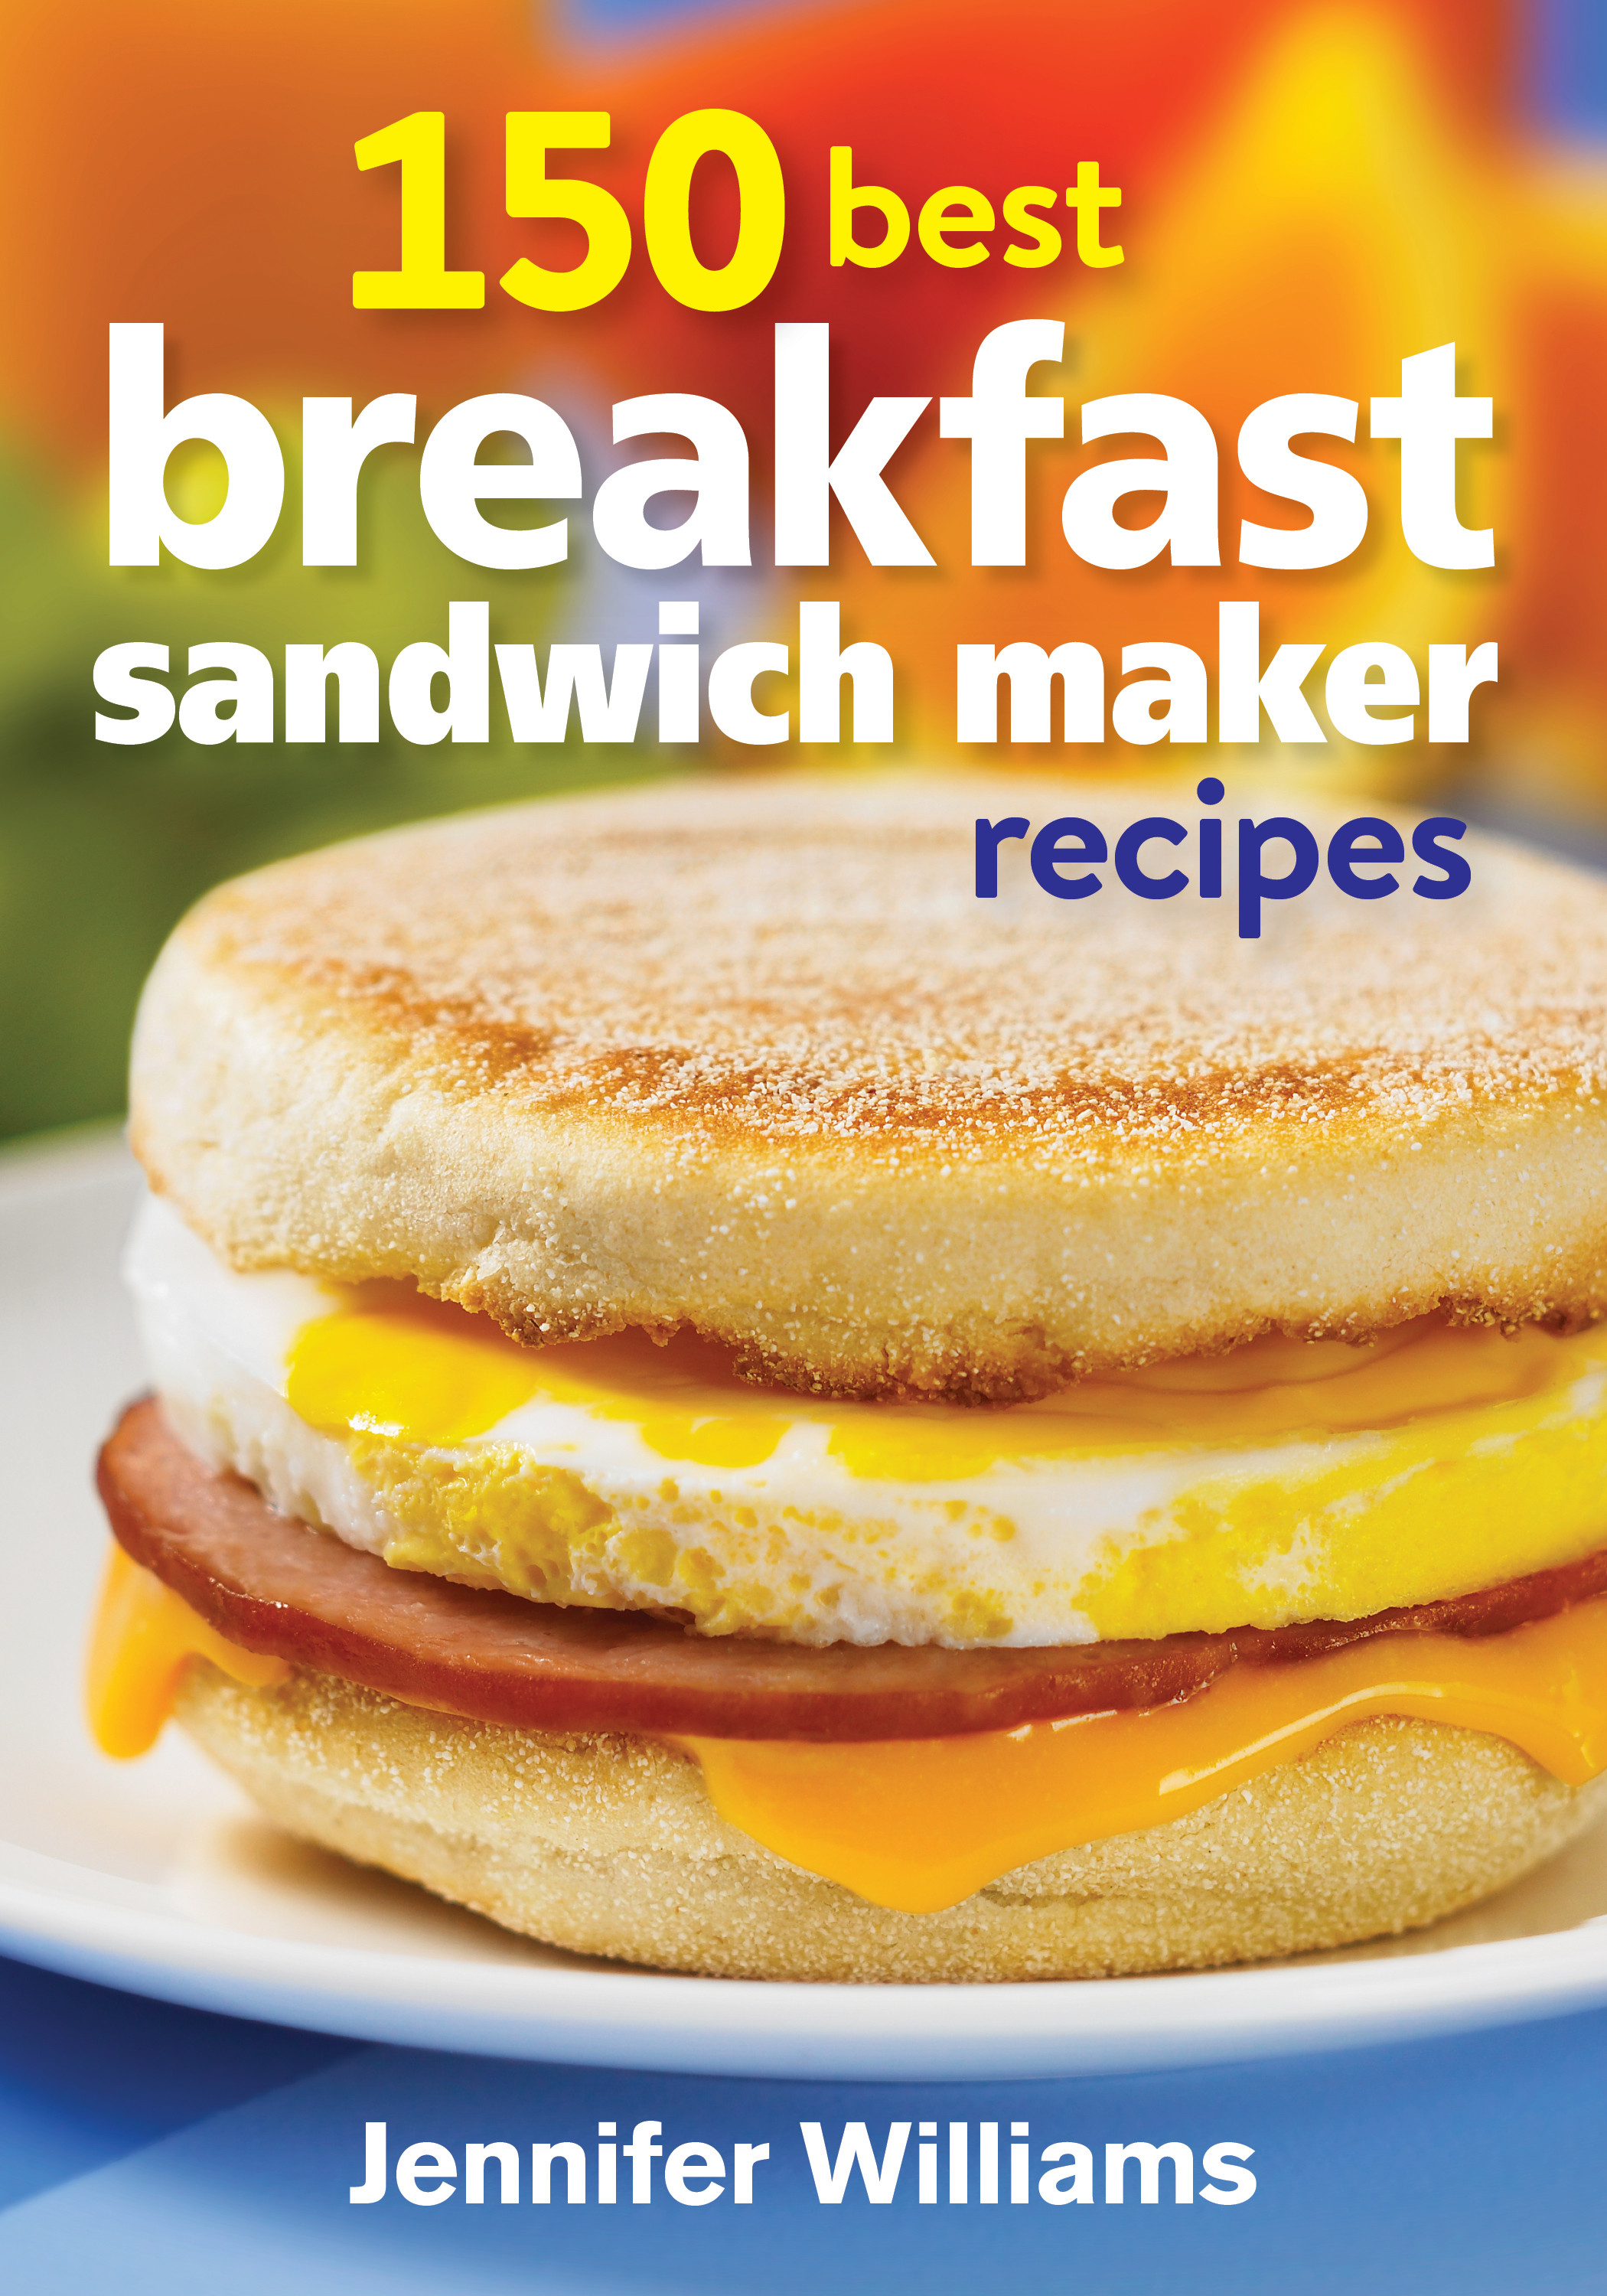 Hamilton Beach Breakfast Sandwich Maker Recipes
 For about skipping breakfast 150 Best Breakfast